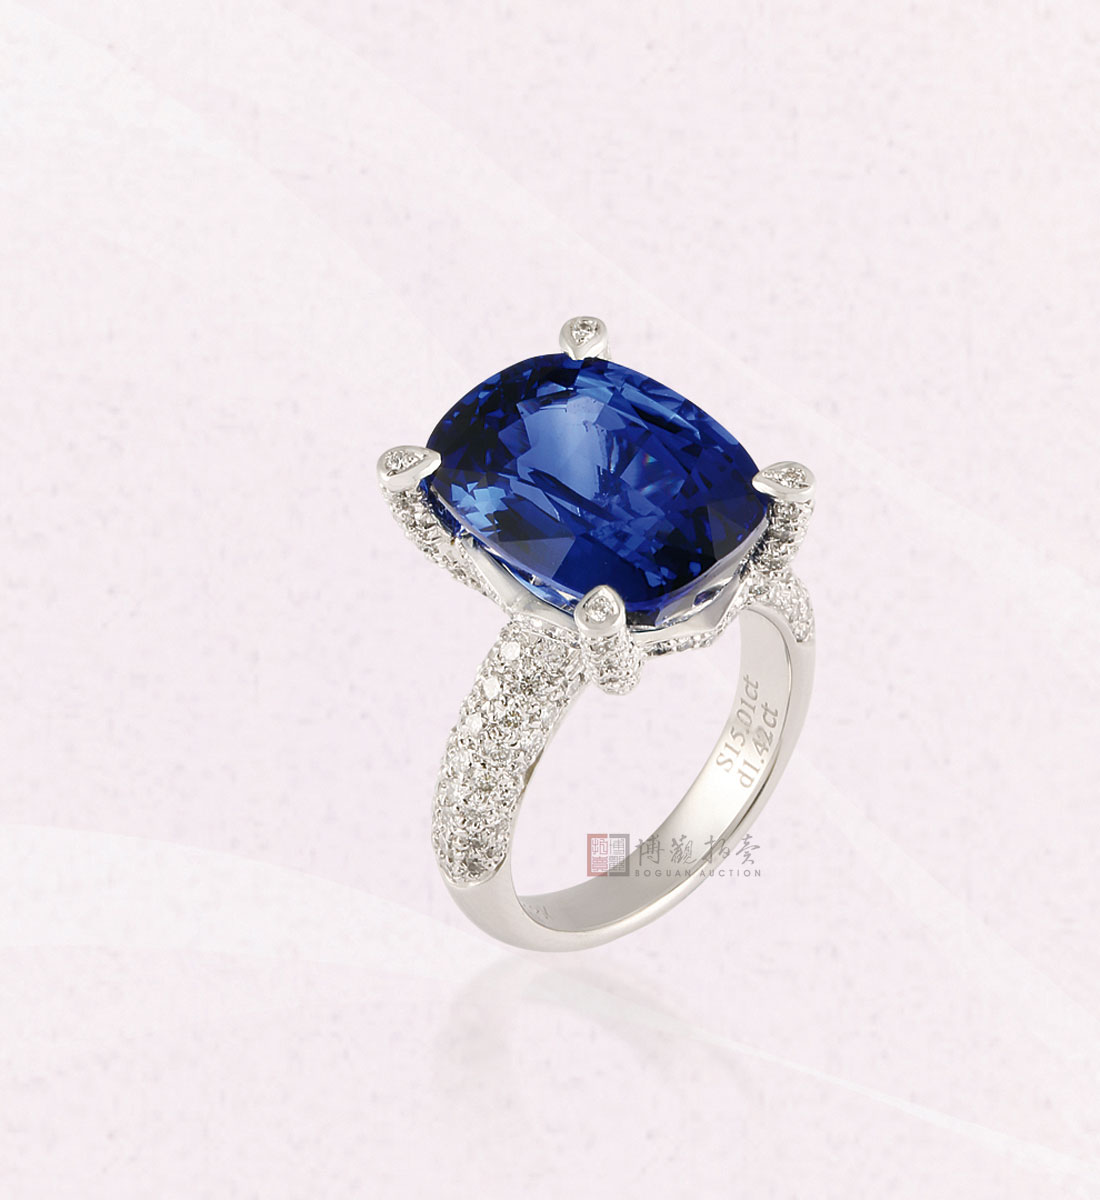 设计图分享 蓝宝石戒指设计图 > 蓝宝石钻石戒指  蓝宝石钻石戒指 宽